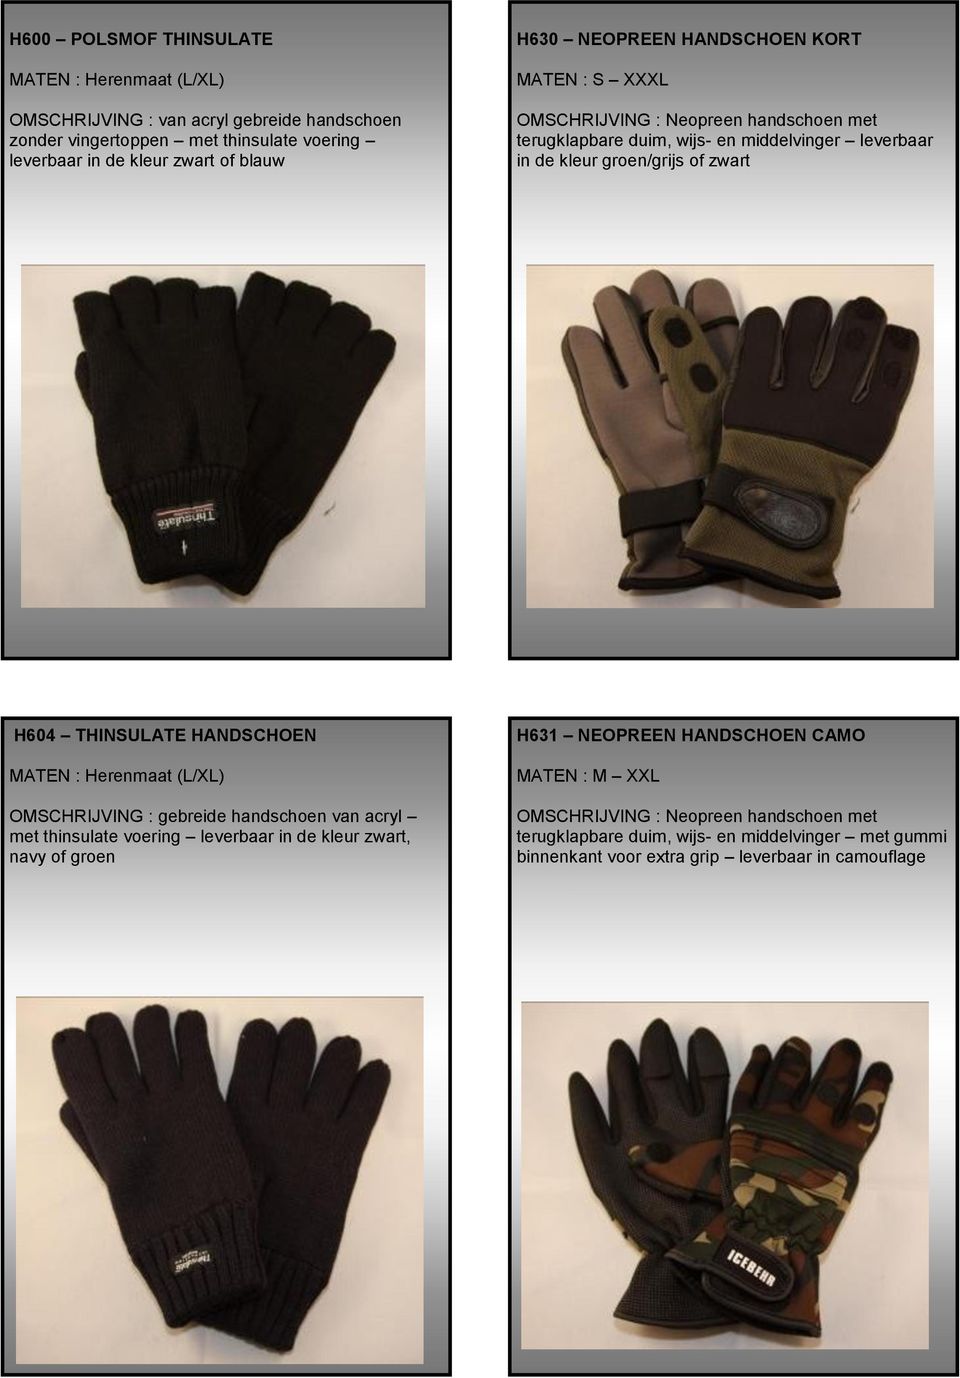 THINSULATE HANDSCHOEN MATEN : Herenmaat (L/XL) OMSCHRIJVING : gebreide handschoen van acryl met thinsulate voering leverbaar in de kleur zwart, navy of groen H631